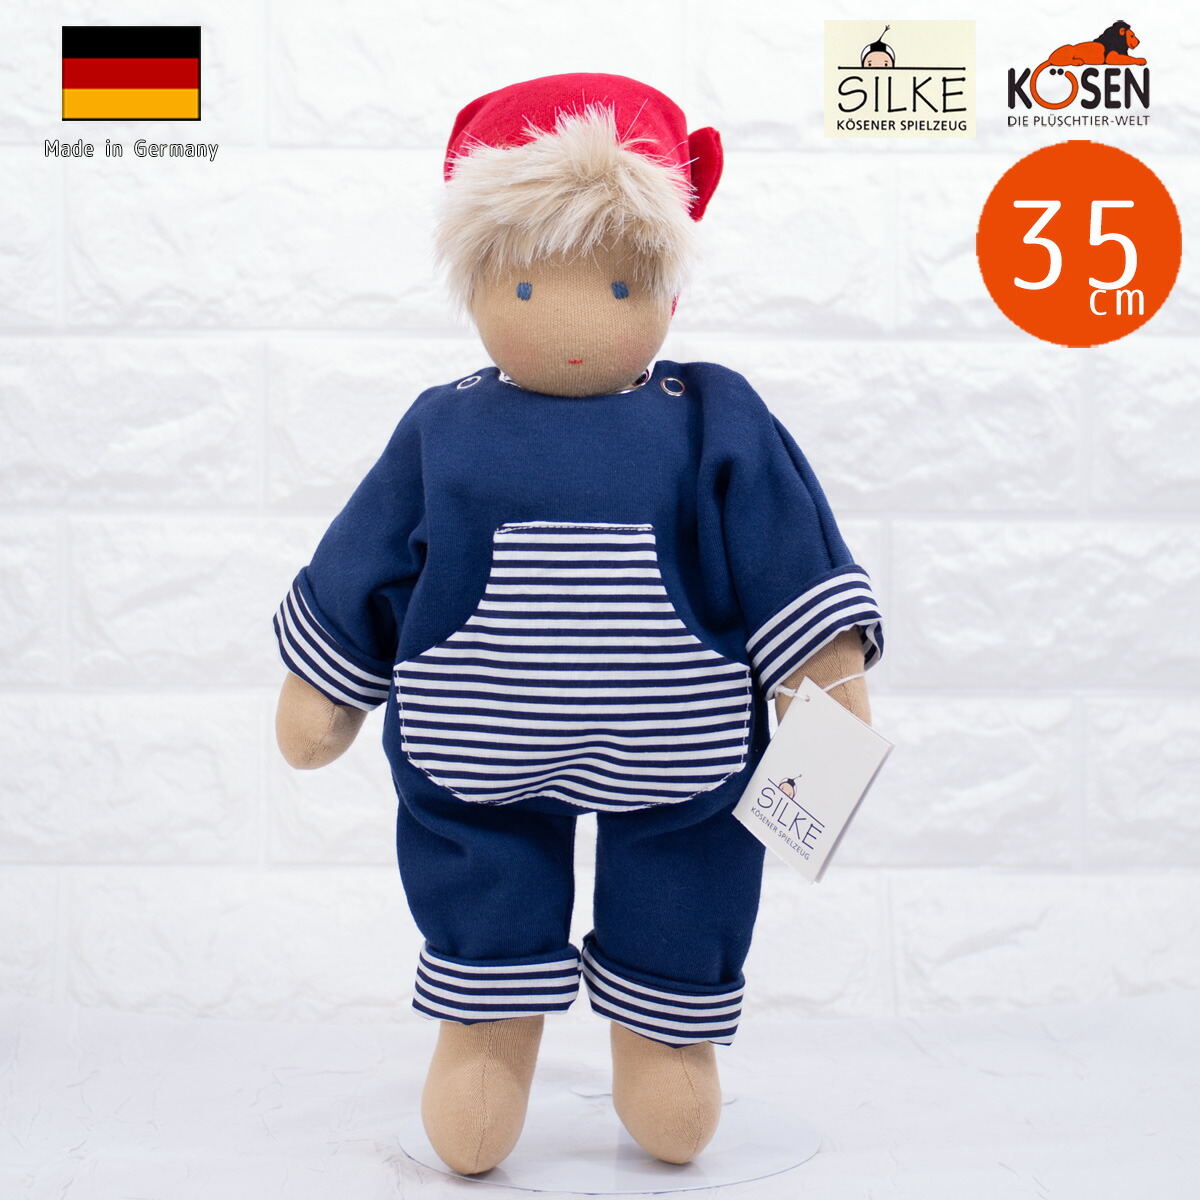 二人】ジルケ人形 ドイツ ケーセン社 世界一美しいとも言われる 